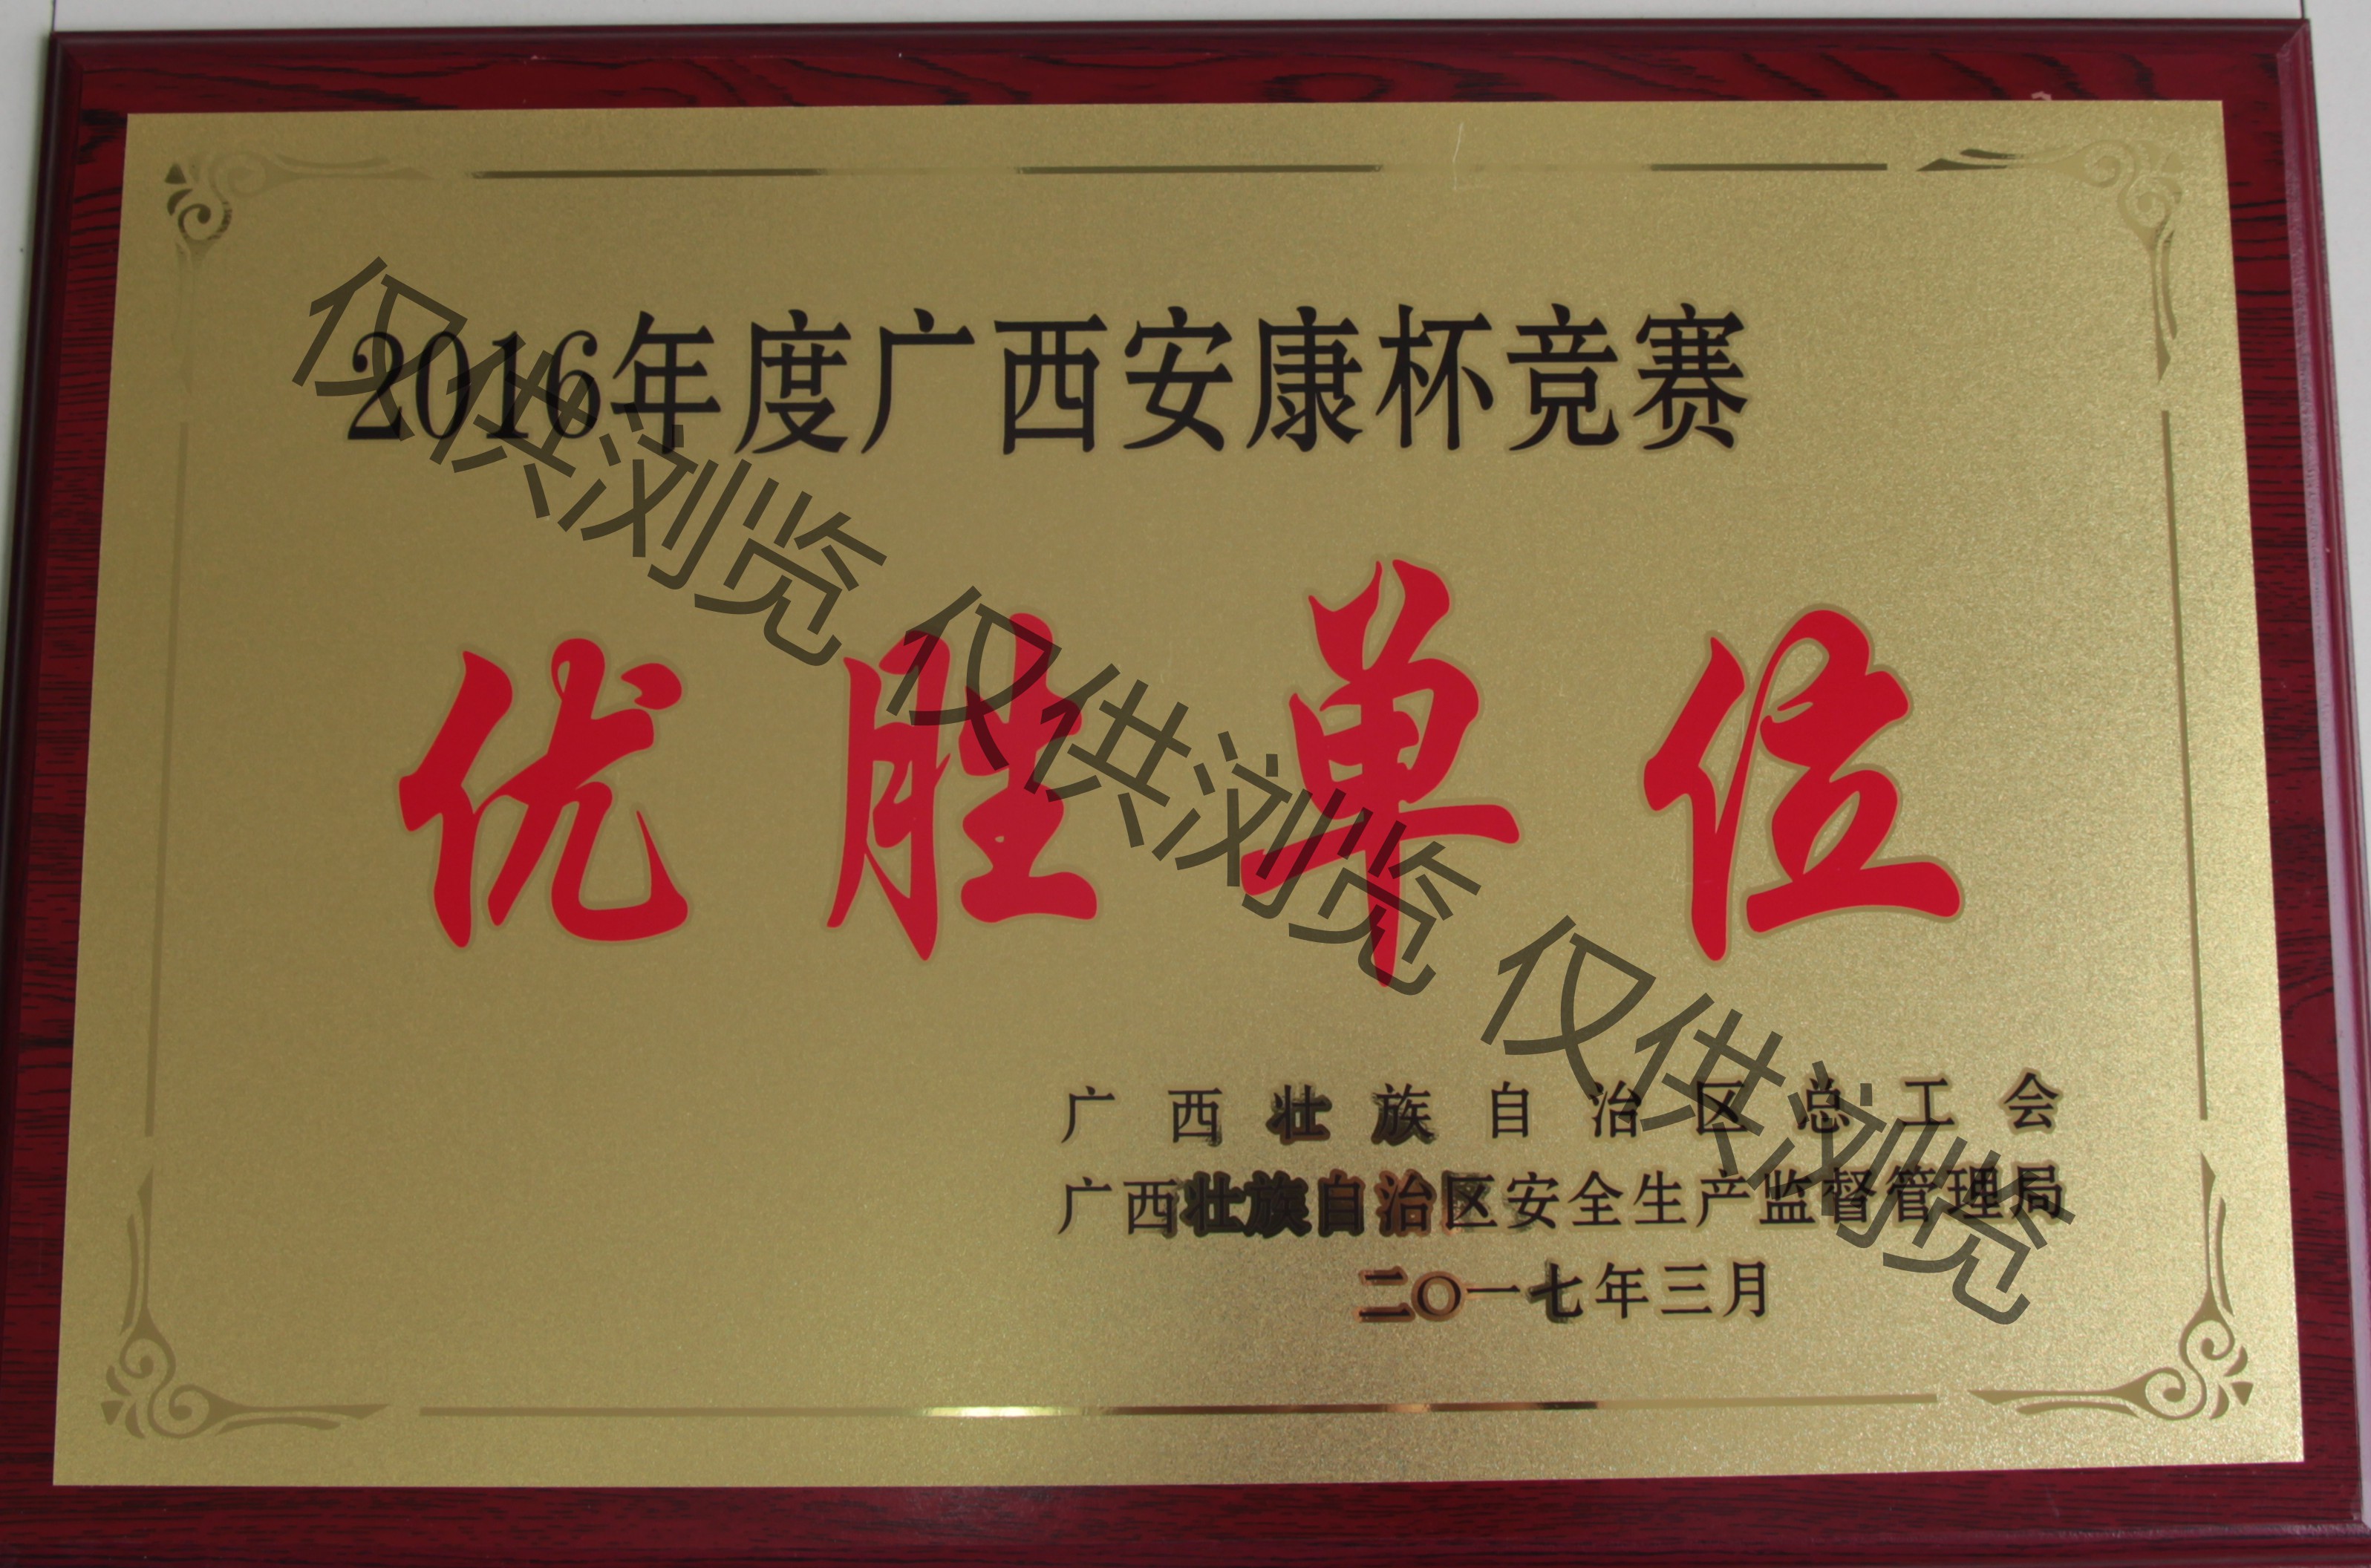 八桂獲2016年度廣西安康杯優勝單位牌匾